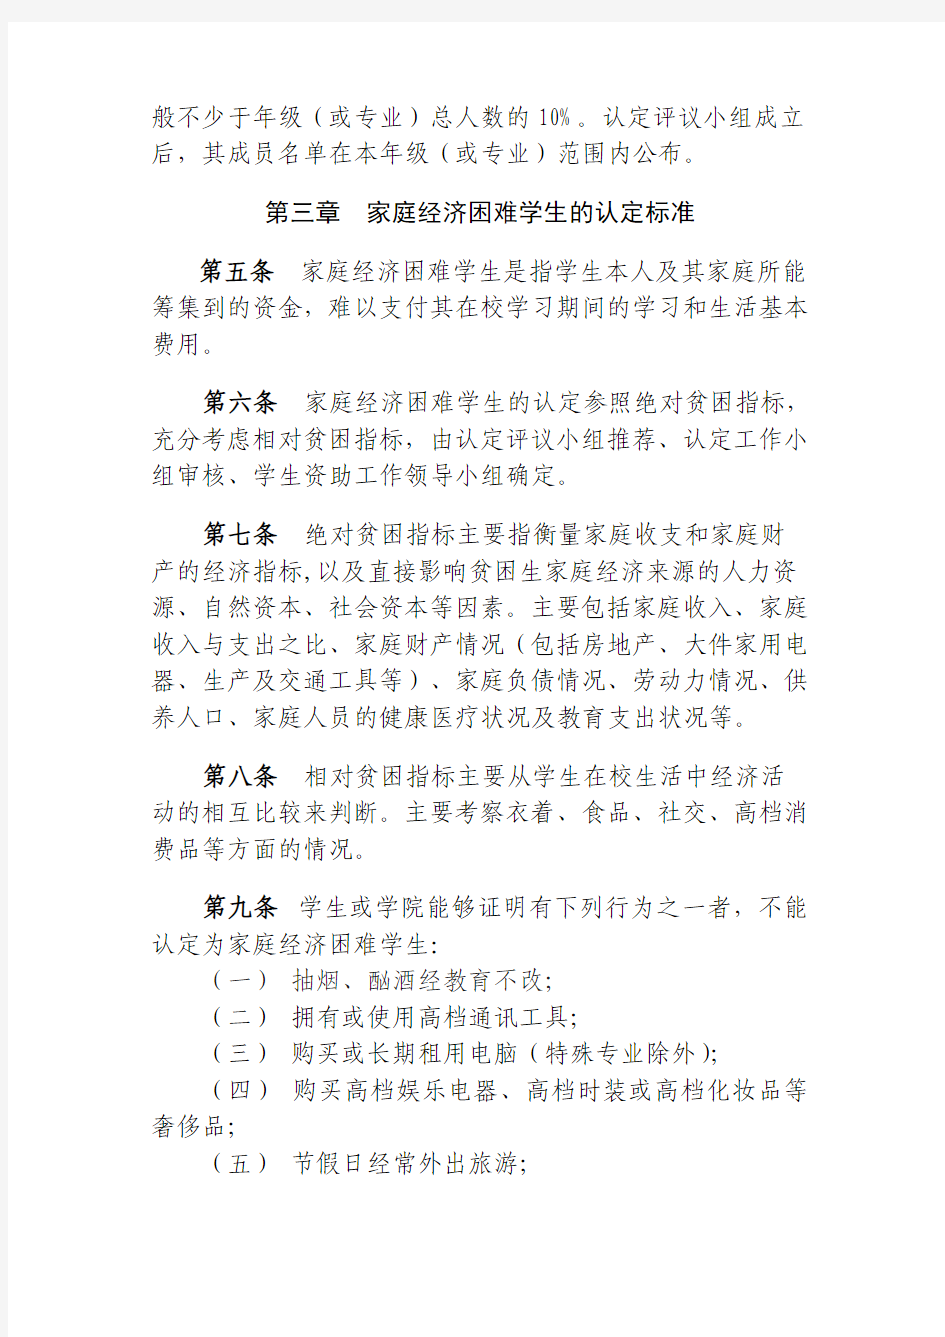 中国海洋大学青岛学院家庭经济困难学生认定办法(暂行)